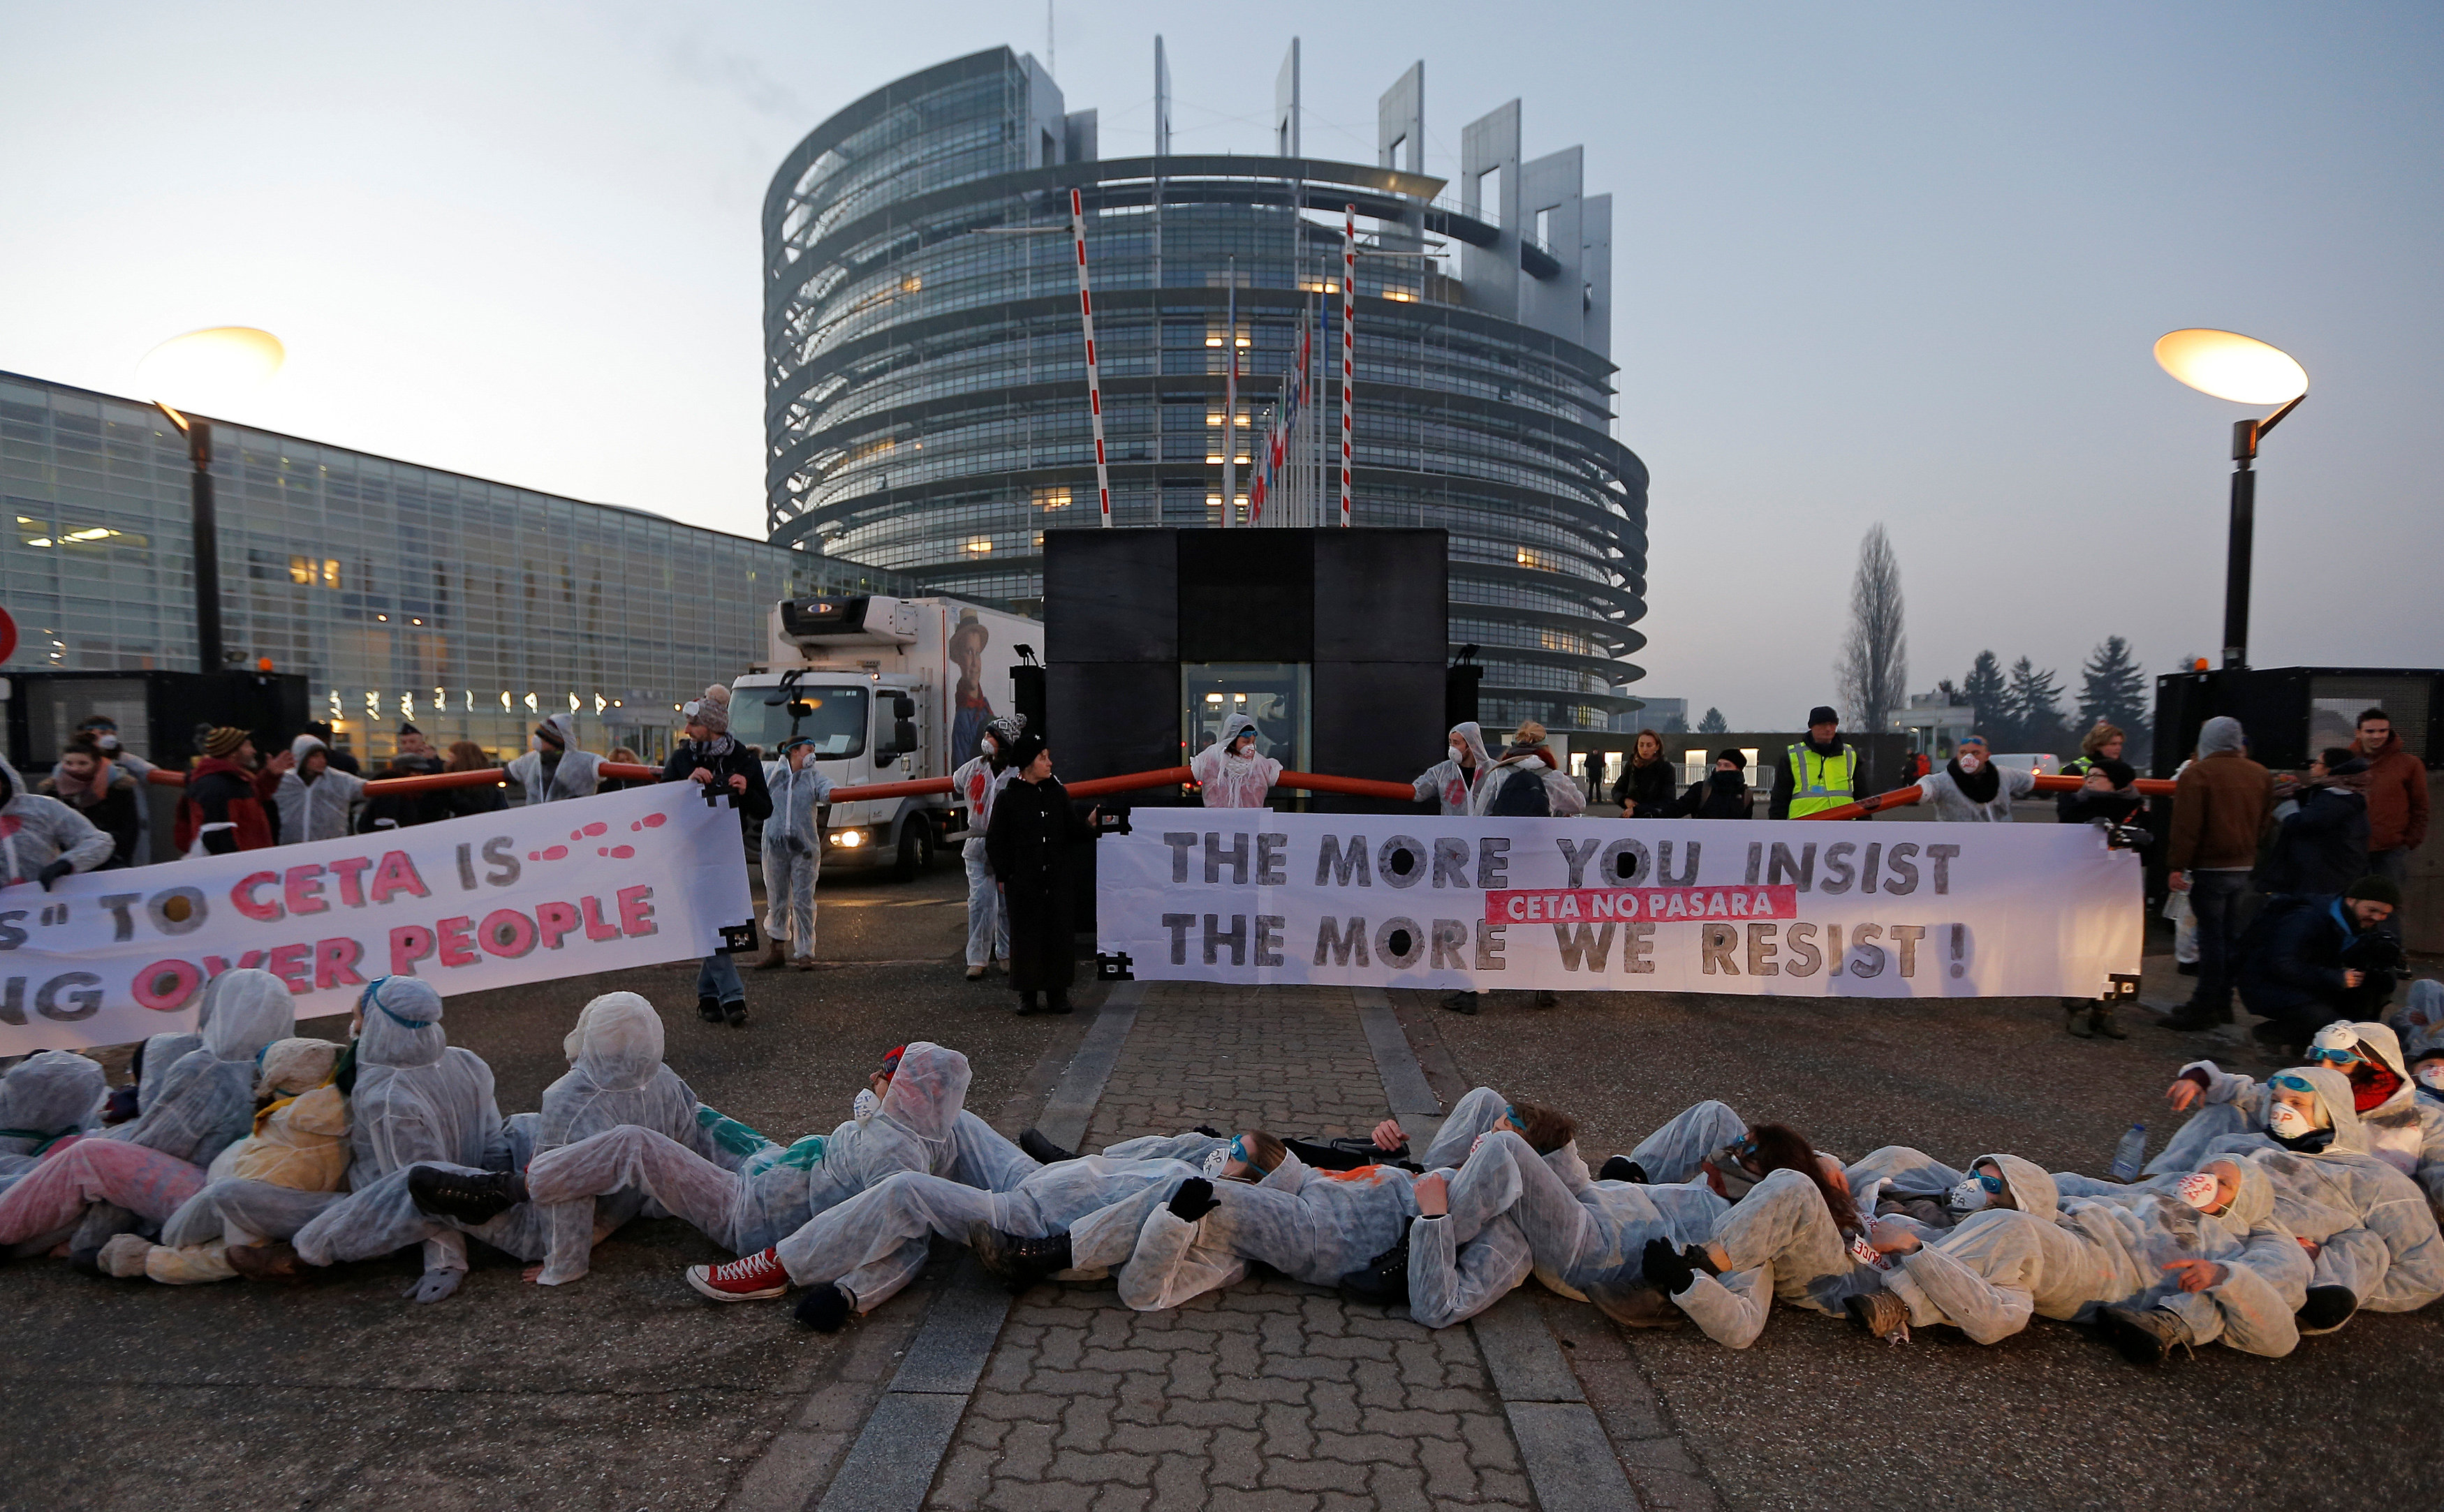 مظاهرات أمام البرلمان الأوروبى للاحتجاج على اتفاقية اقتصادية بين الاتحاد الأوروبى وكندا